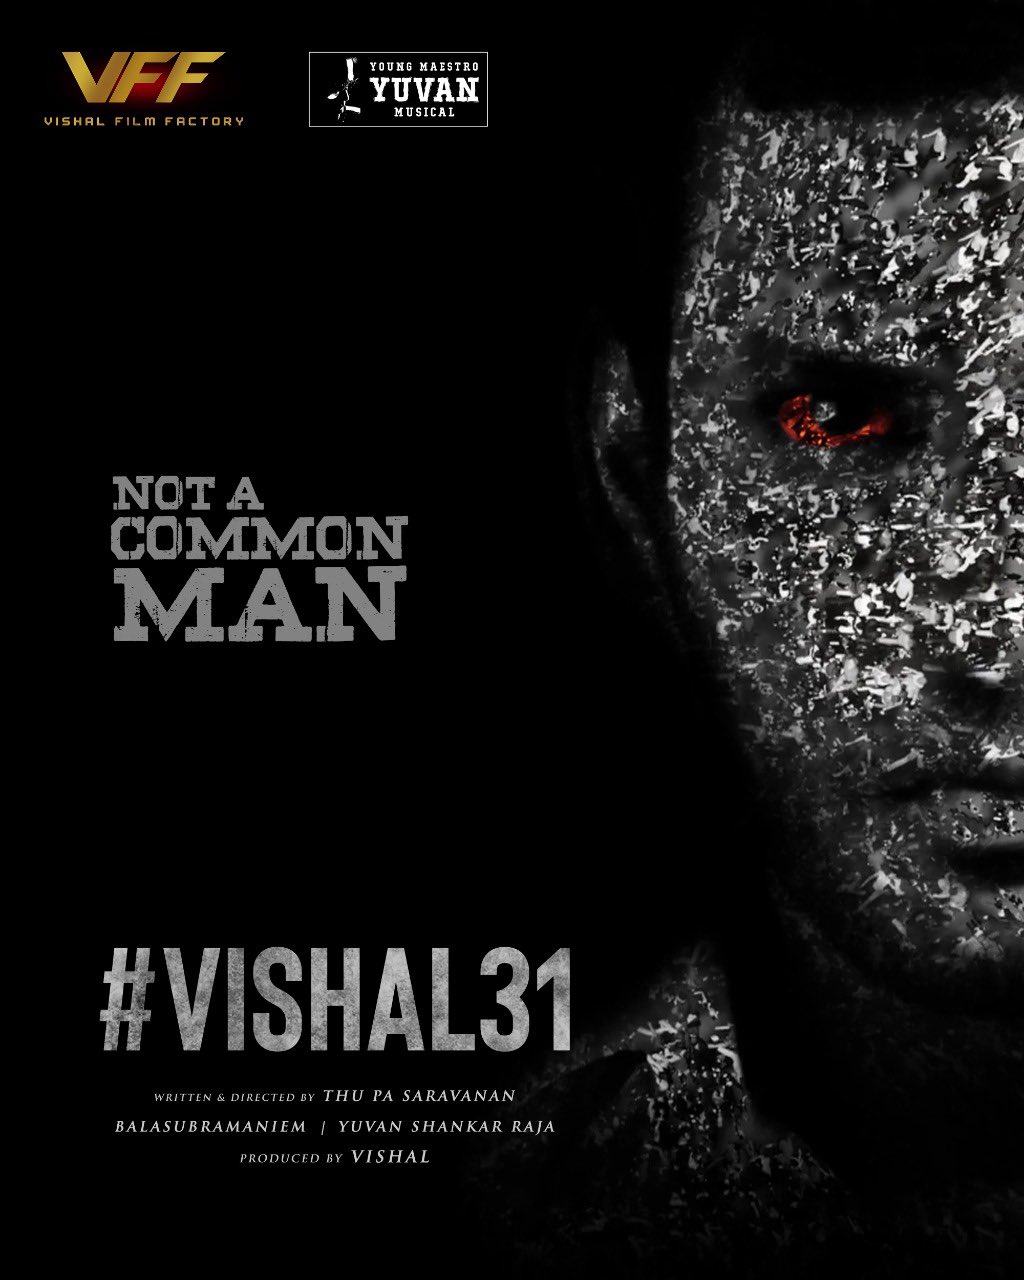 விஷால் 31 வில்லன் Malayalam actor Baburaj vishal31 villain